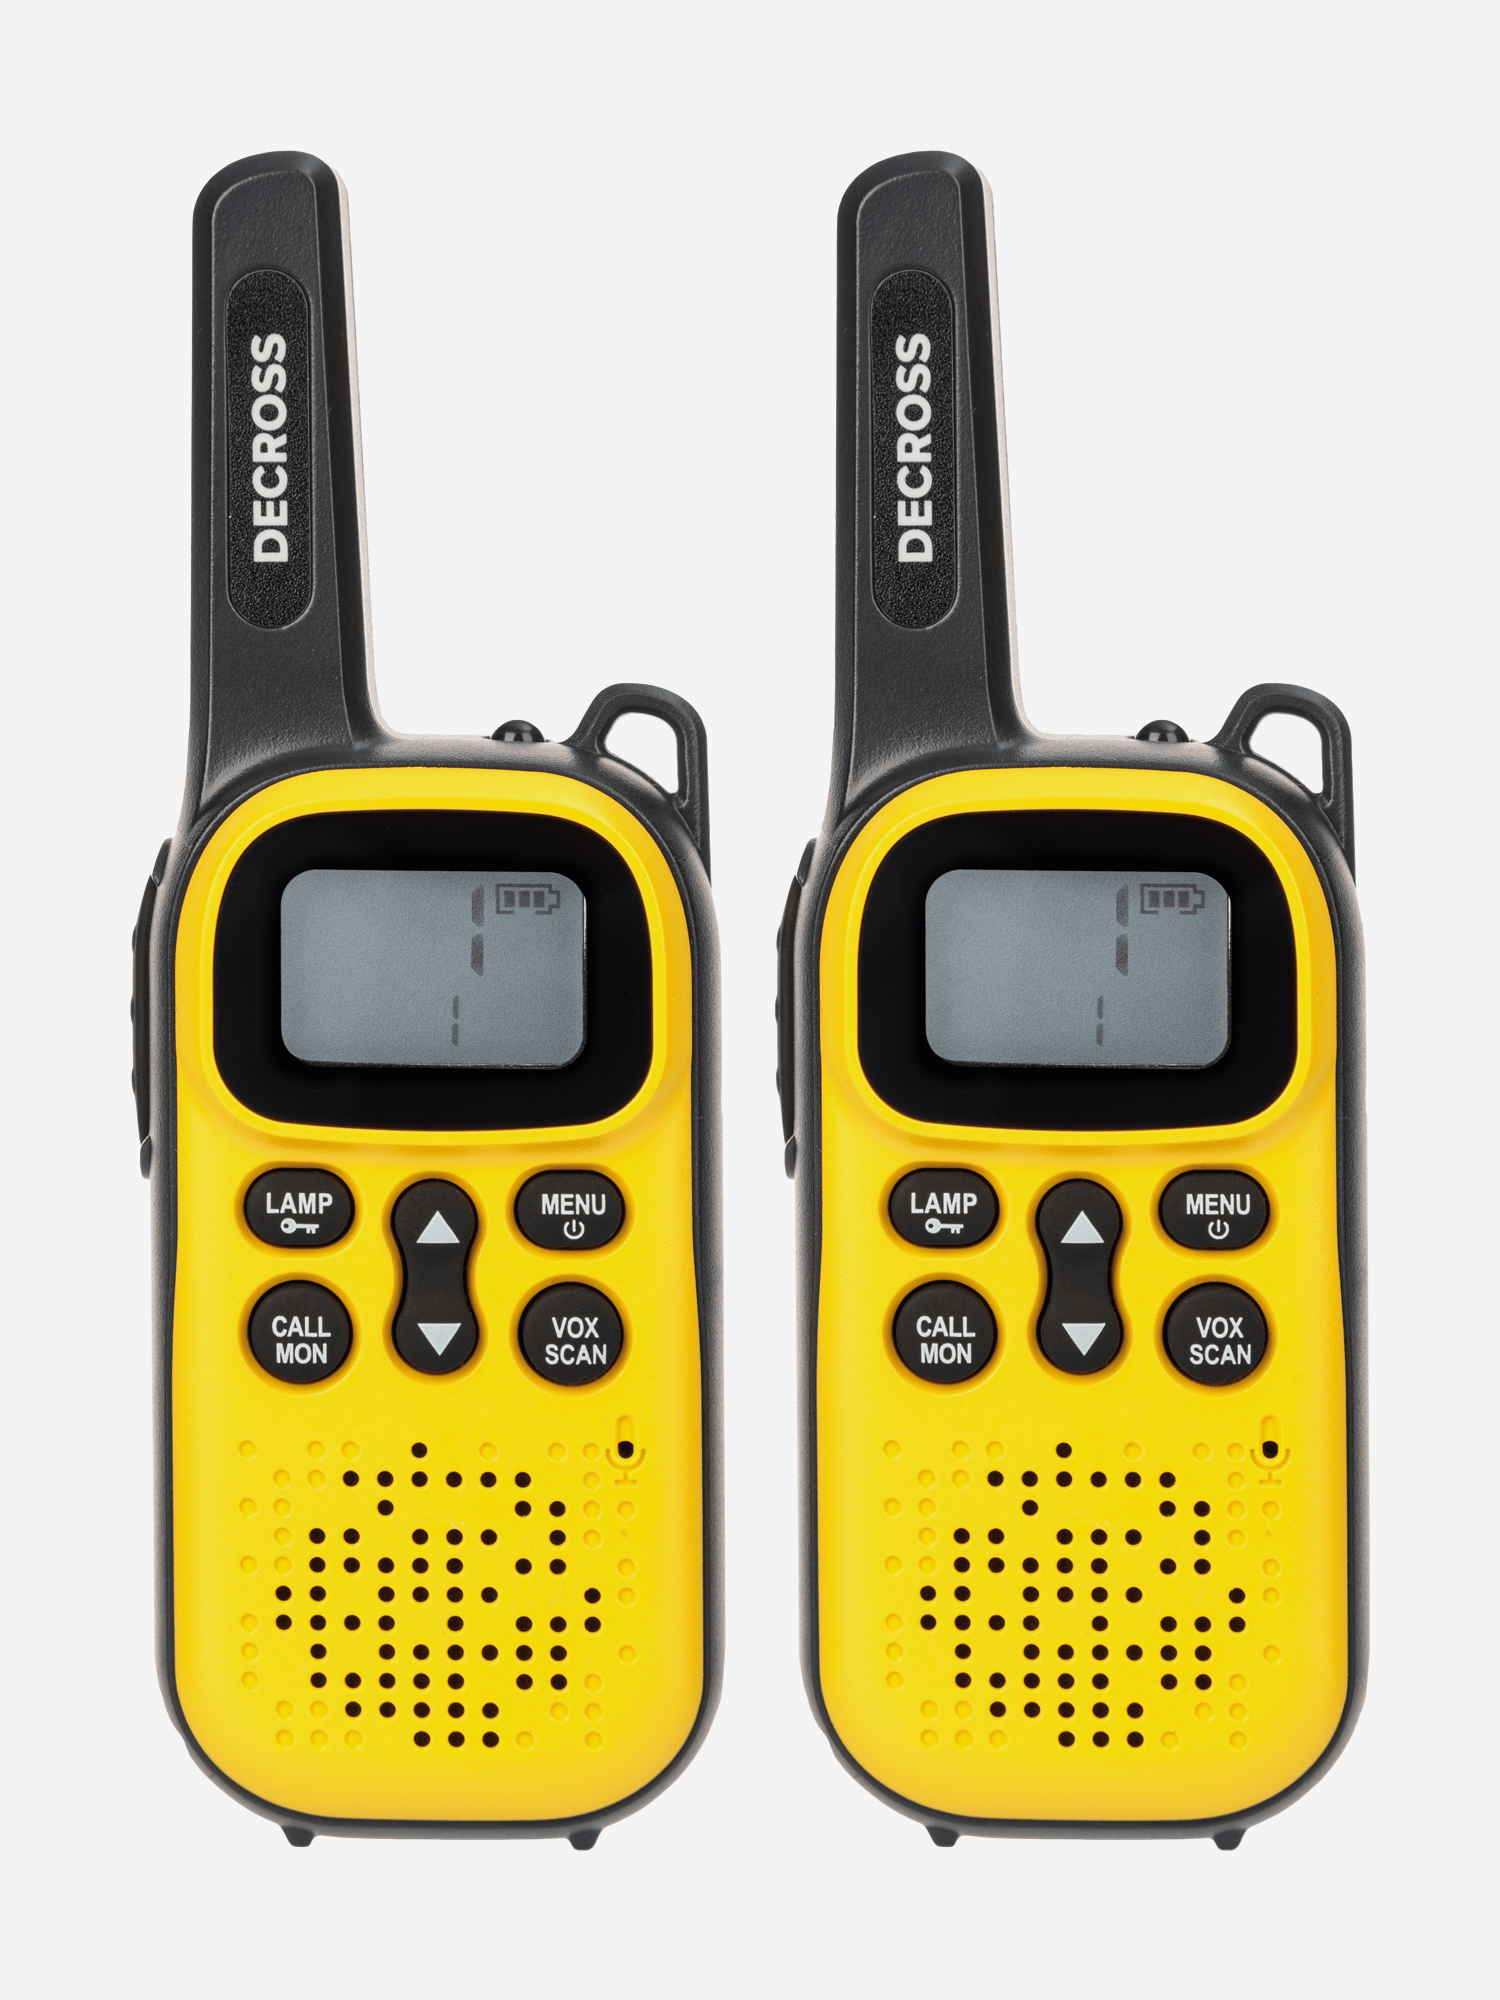 Комплект из двух радиостанций Decross DC43 Yellow Twin EU без ЗУ, пишем маслом на пленэре вдохновляющее руководство по живописи на открытом воздухе